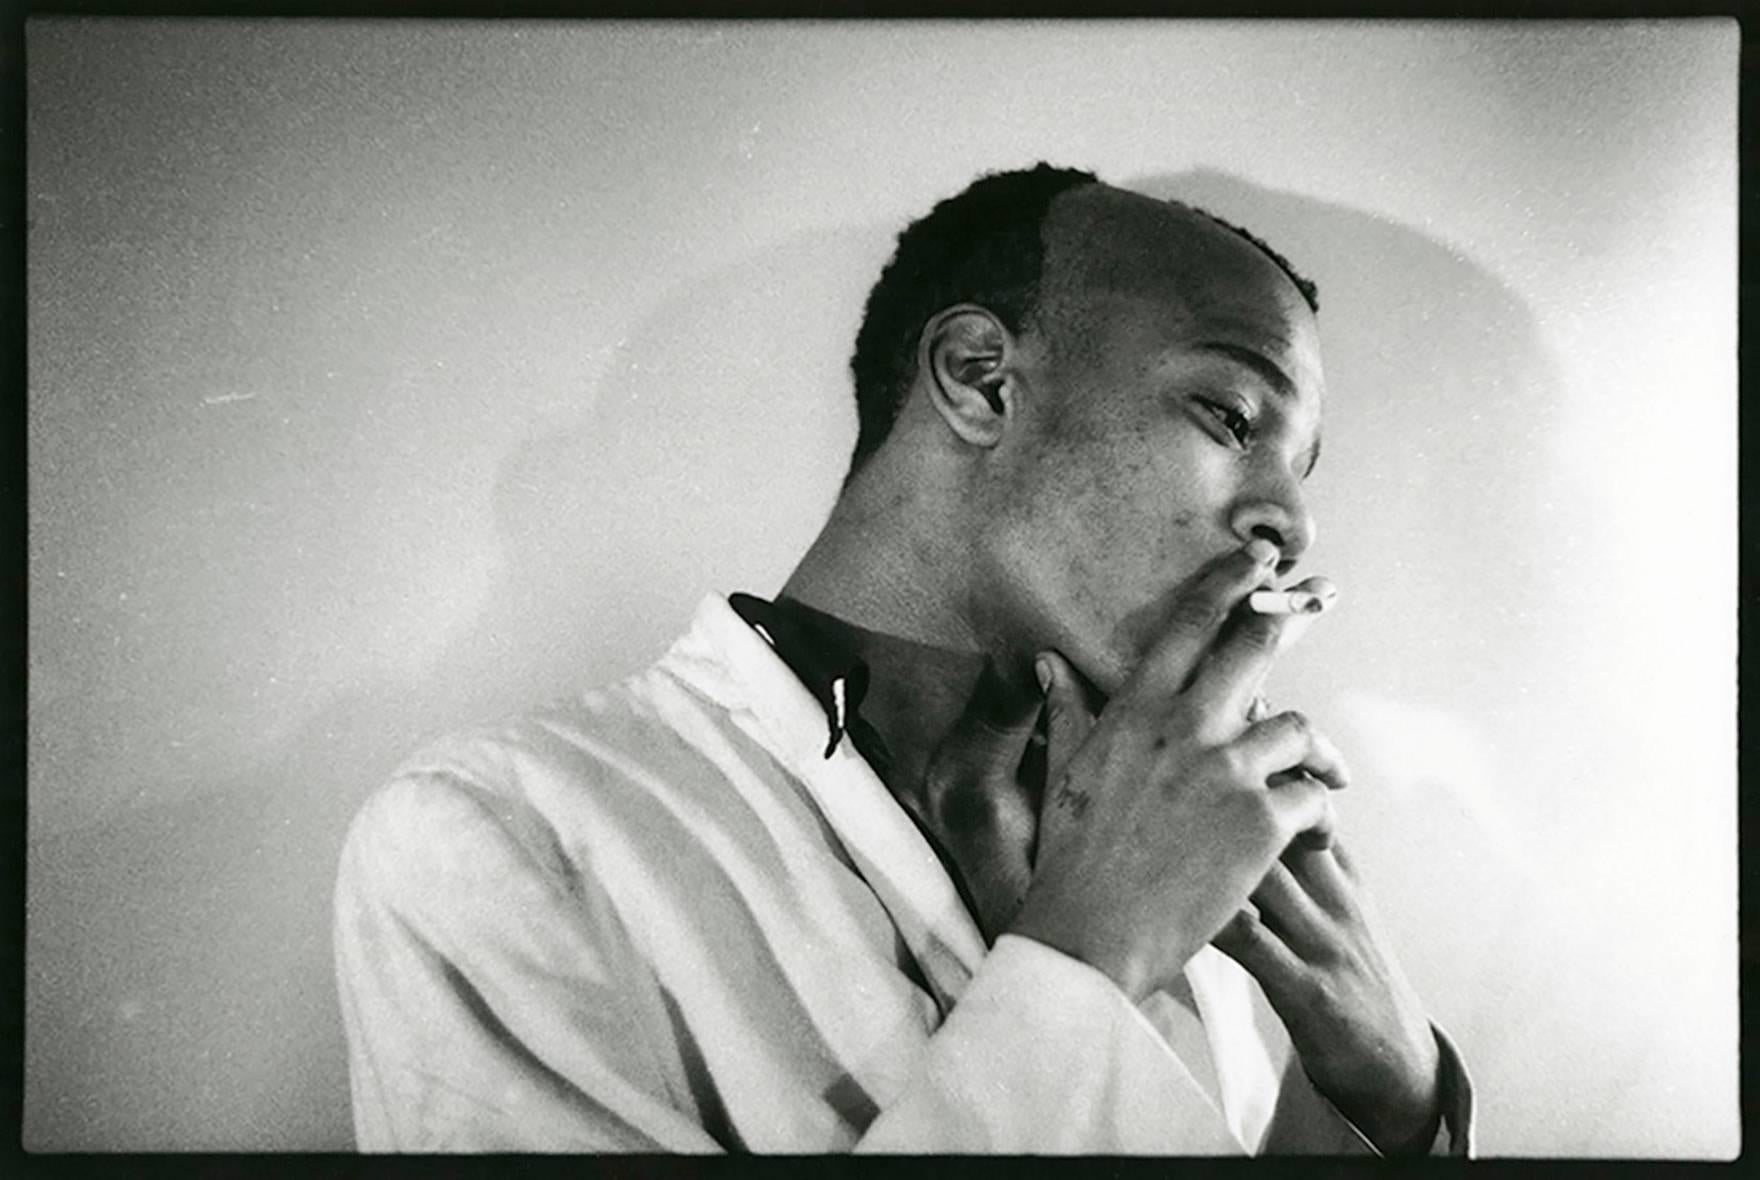 Nicholas Taylor Portrait Photograph - Jean Michel Basquiat photograph (Samo, young Basquiat) 